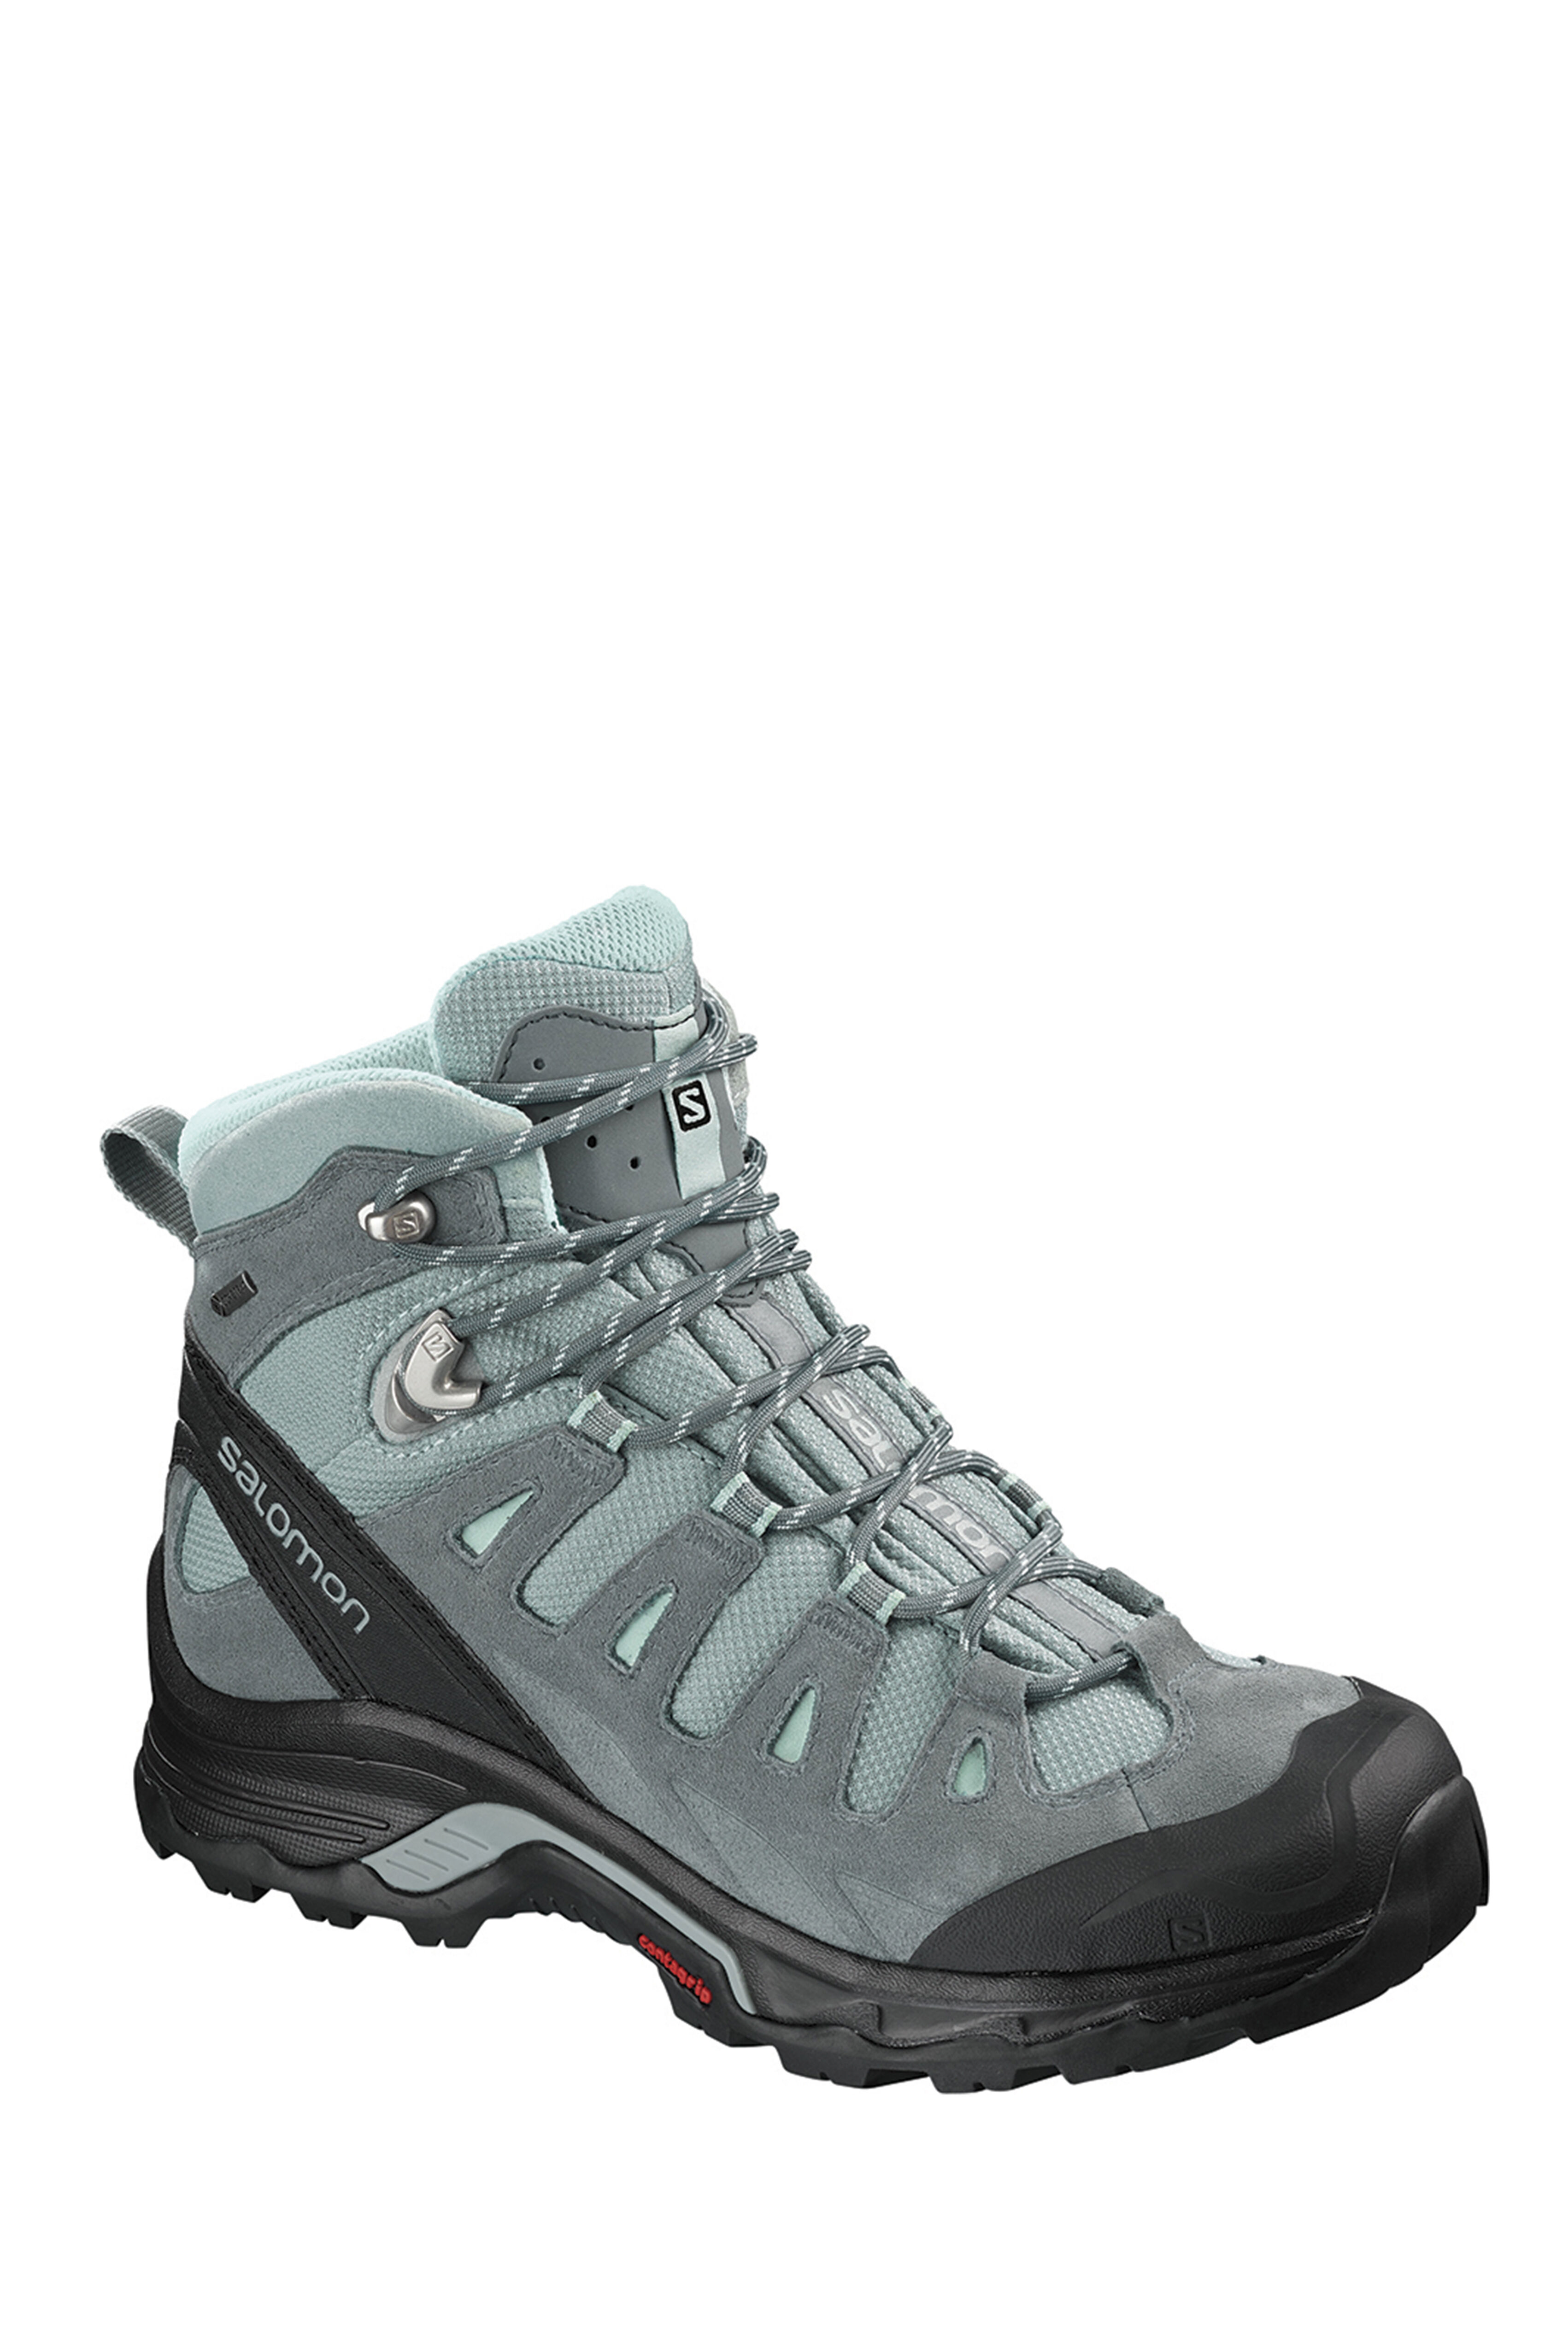 salomon women's quest prime gtx hiking boots